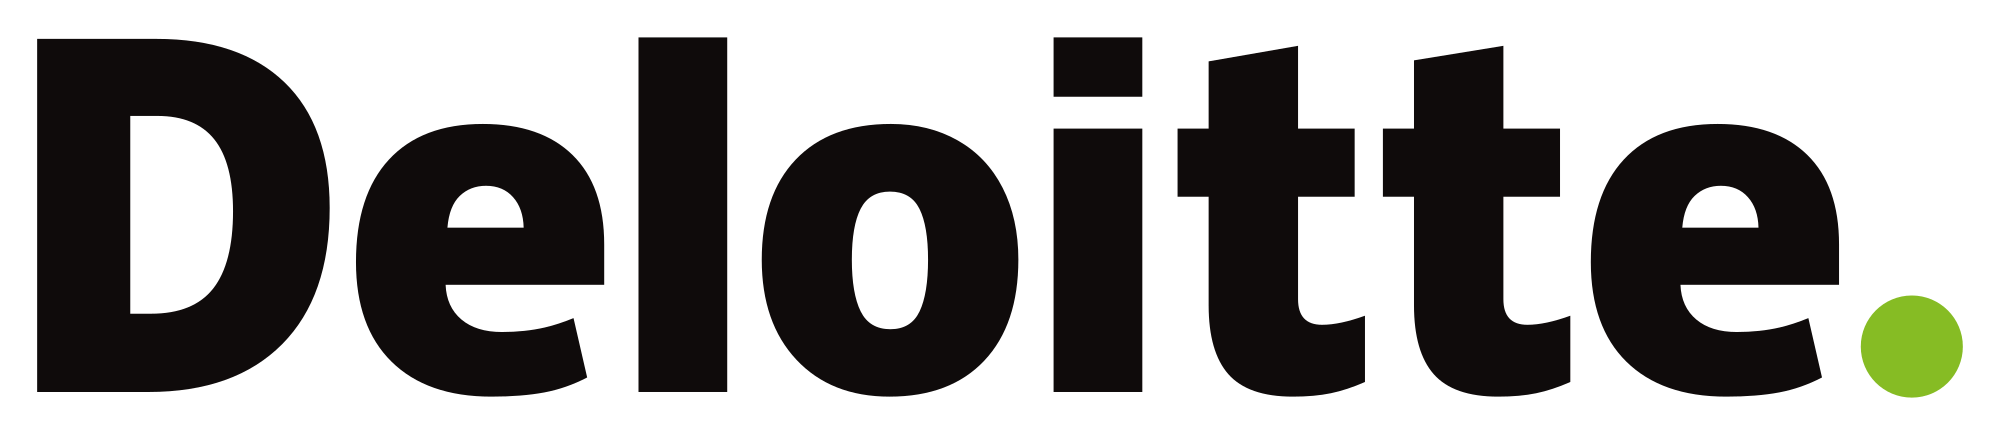 Deloitte Digital Logo - Deloitte.svg